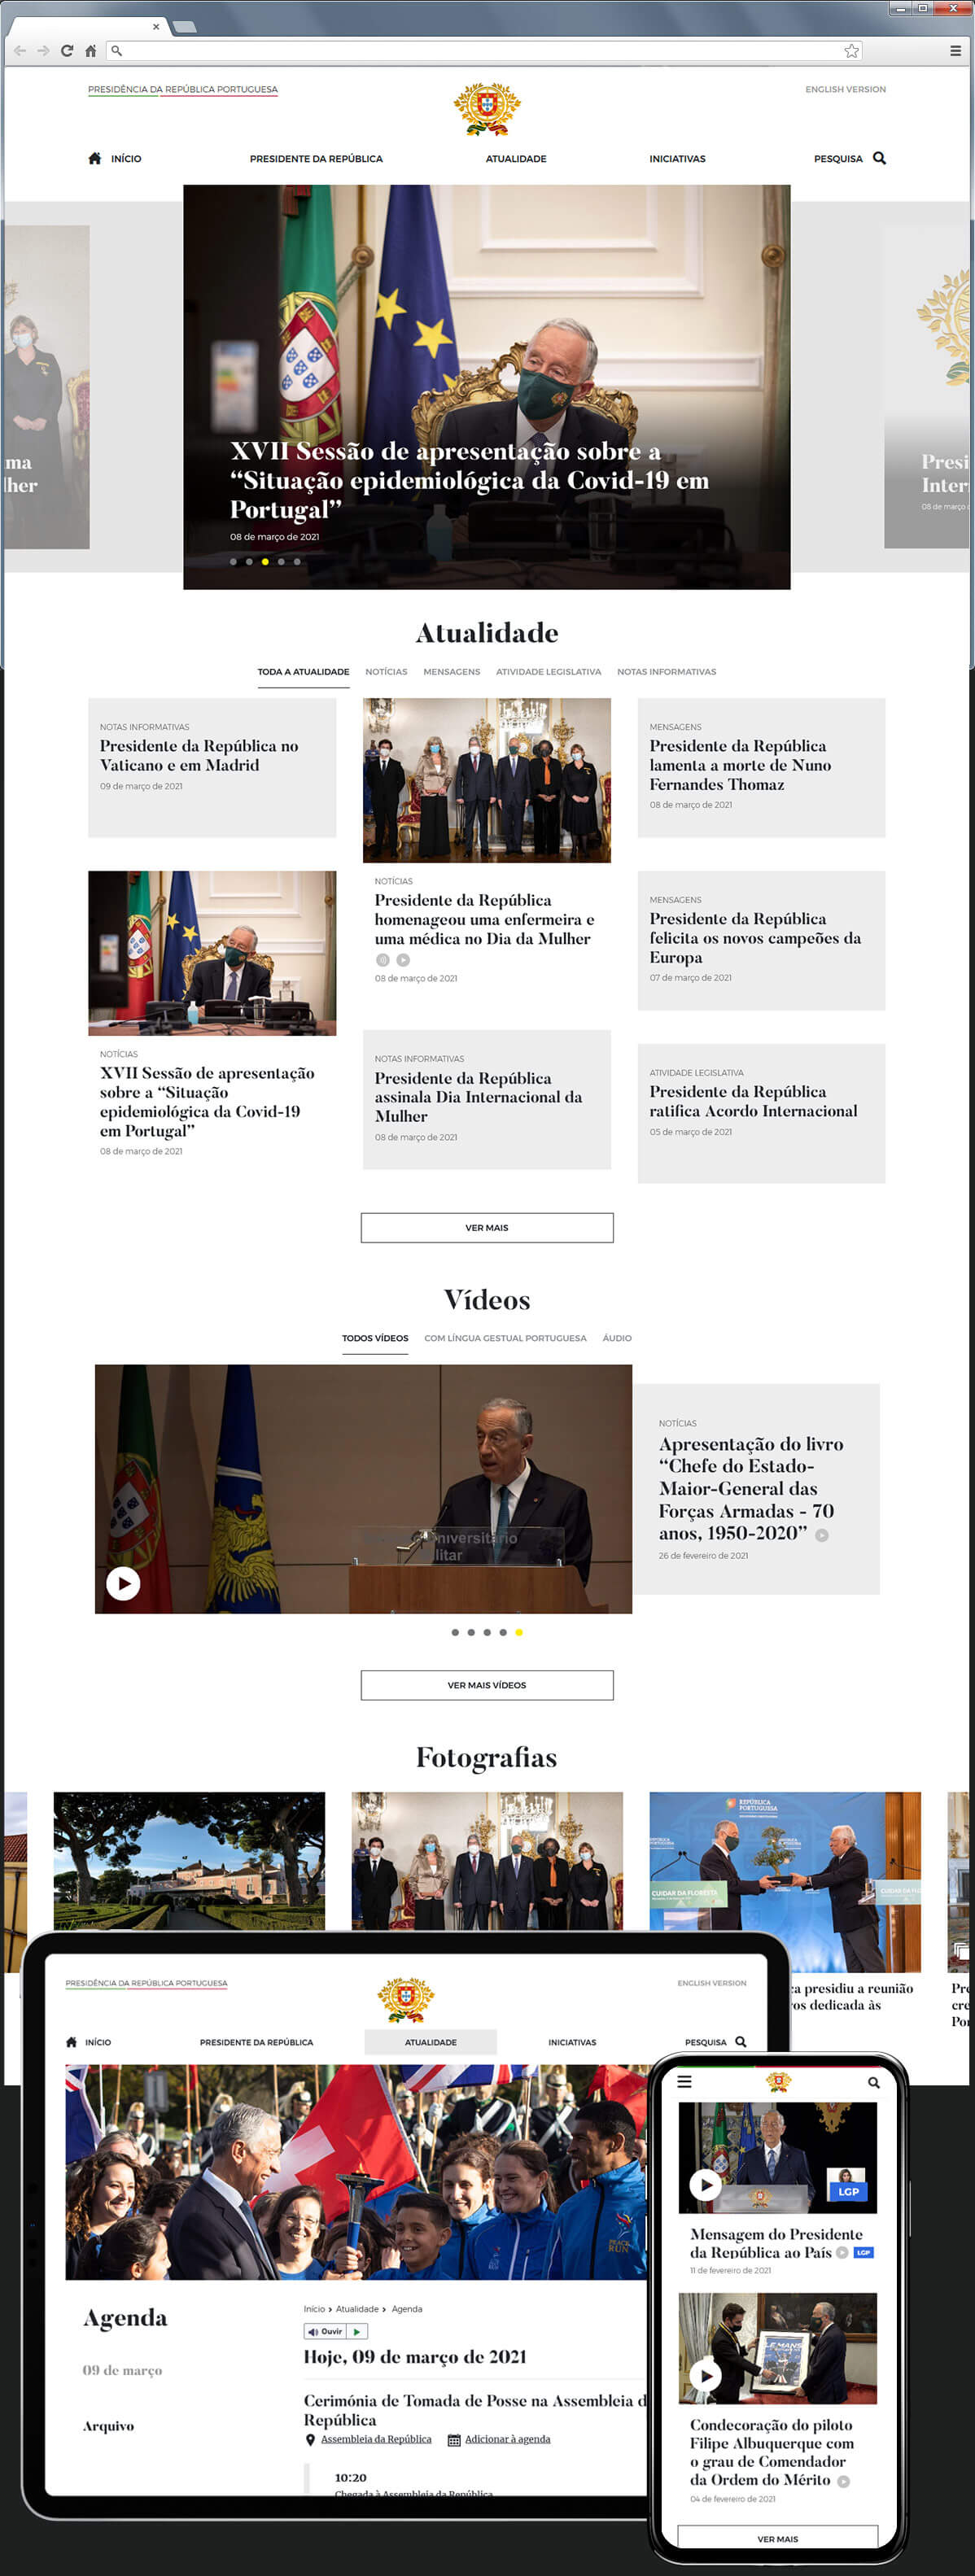 Website | Homepage, Calendar and Multimedia